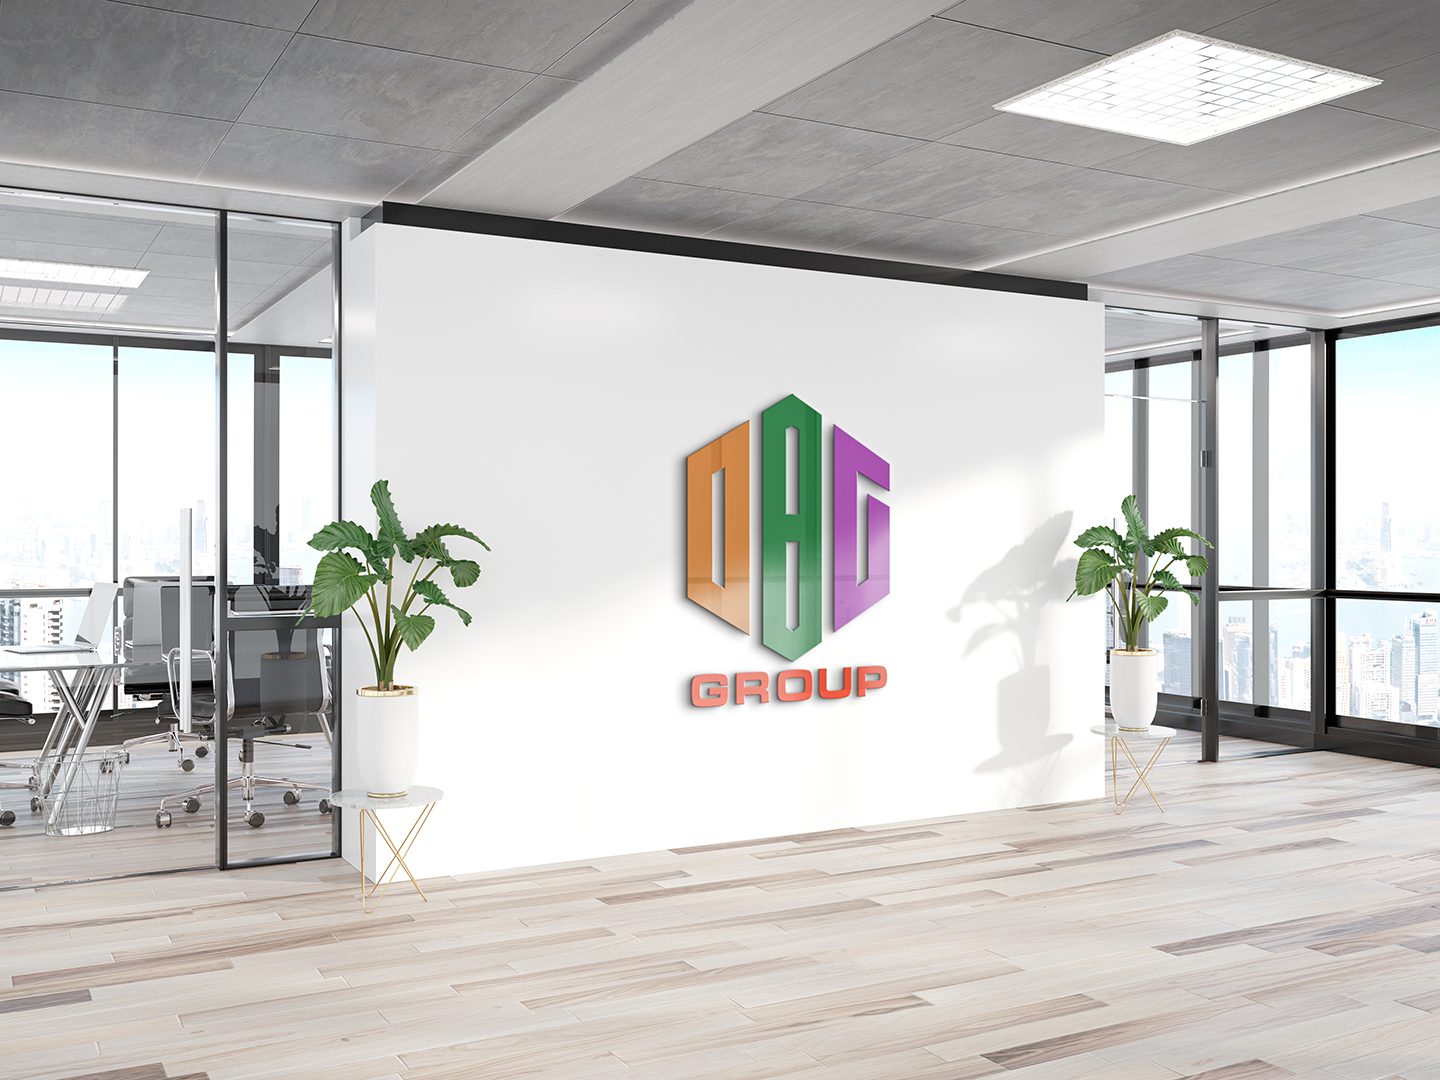 Bản chính logo bất động sản DBG group.